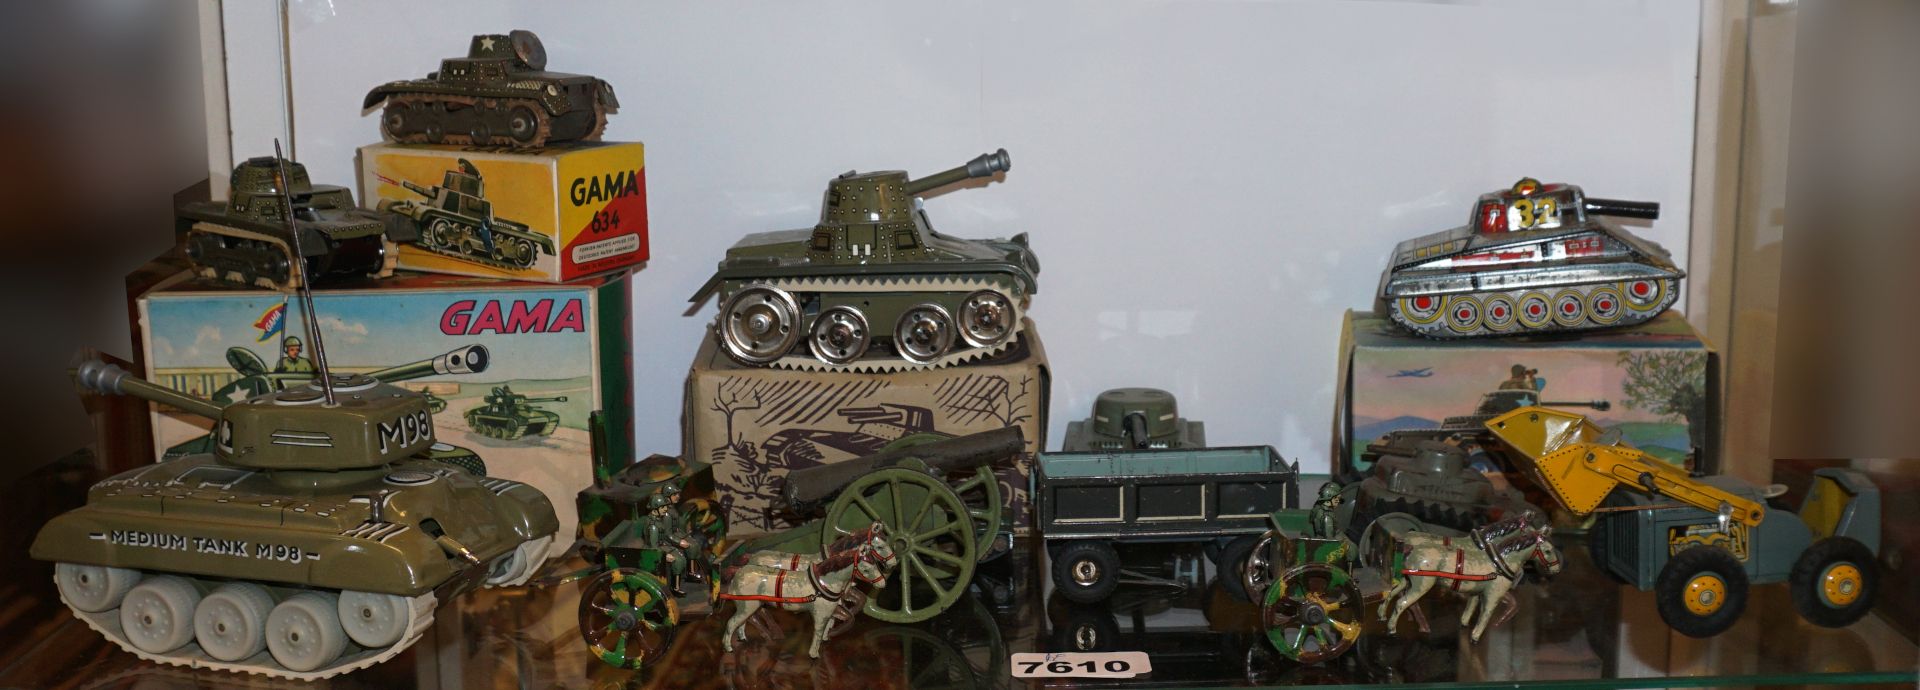 1 Konv. militärisches Spielzeug u.a. GAMA-Panzer z.T. mit Originalverpackung z.T. ber./Asp. - Bild 2 aus 2